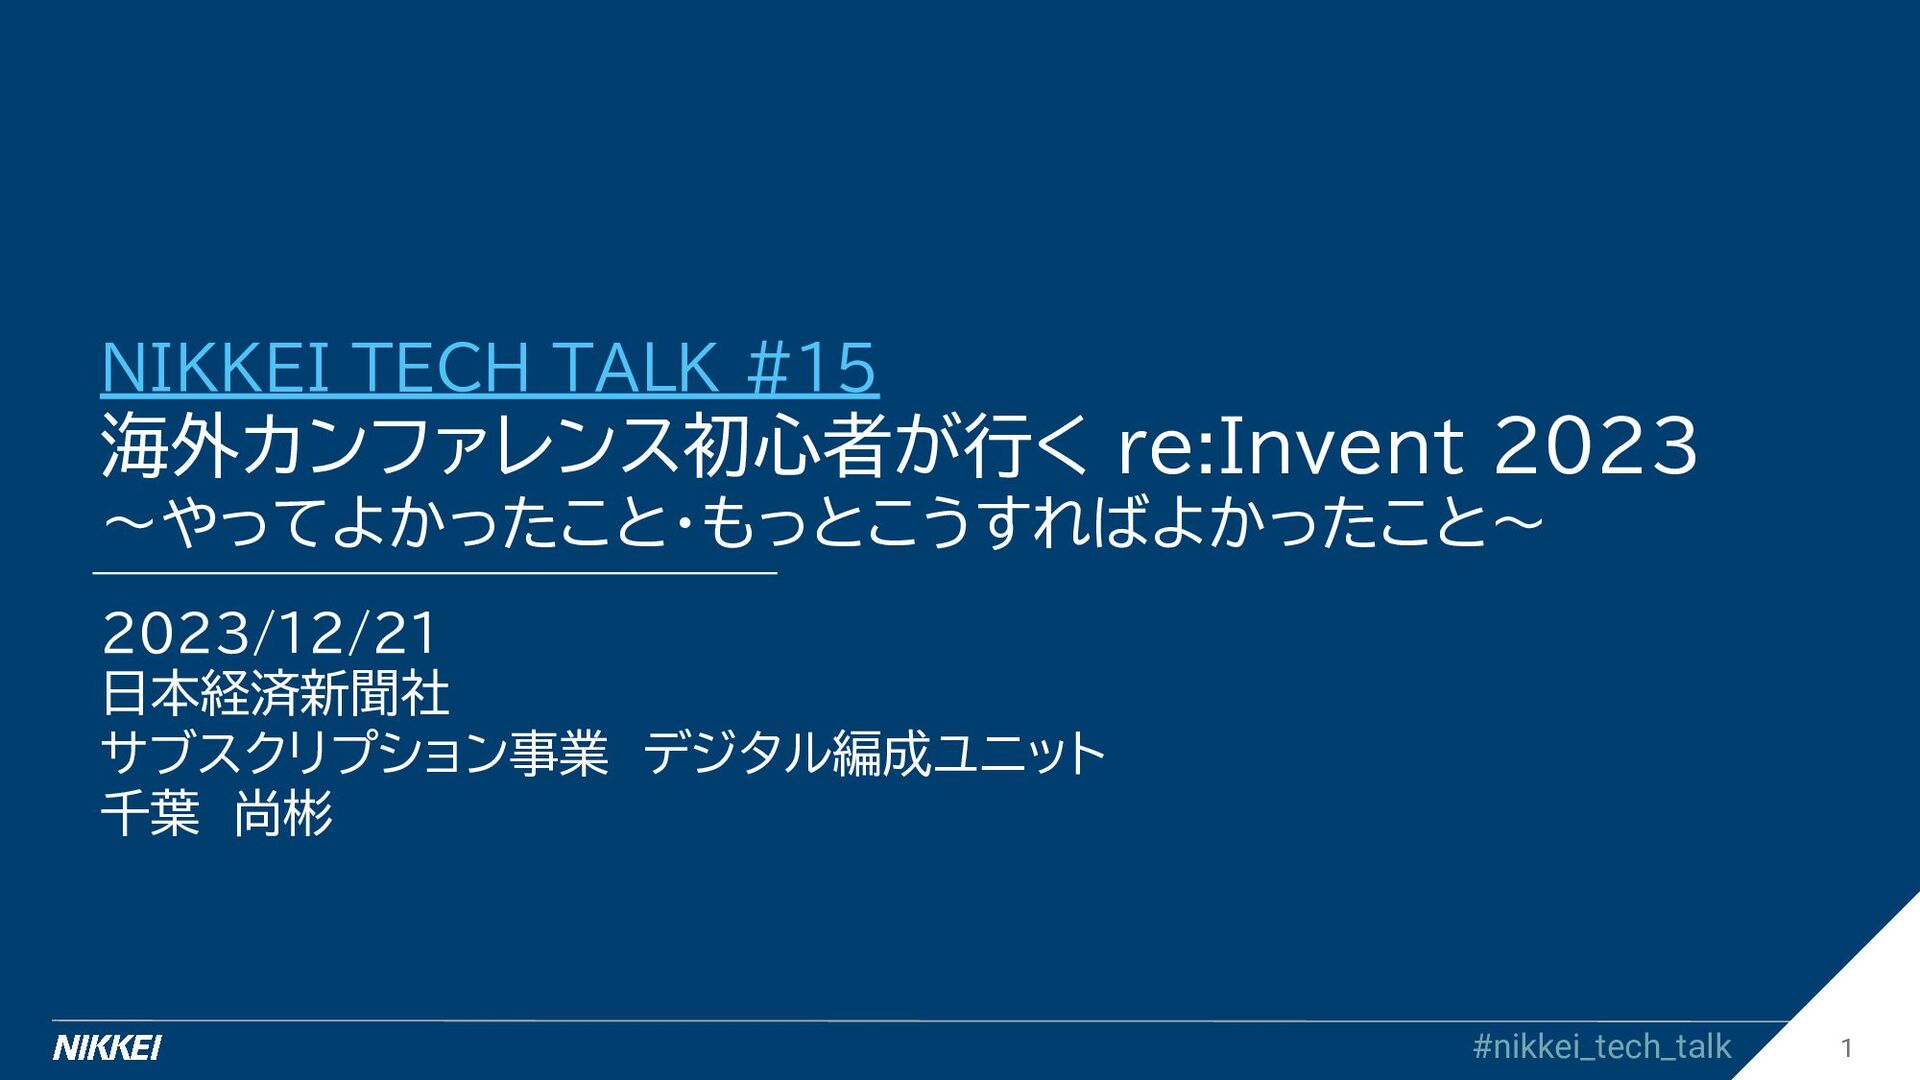 海外カンファレンス初心者が行く re:Invent 2023 〜やってよかったこと・もっとこうすればよかったこと〜/nikkei-tech-talk15-2